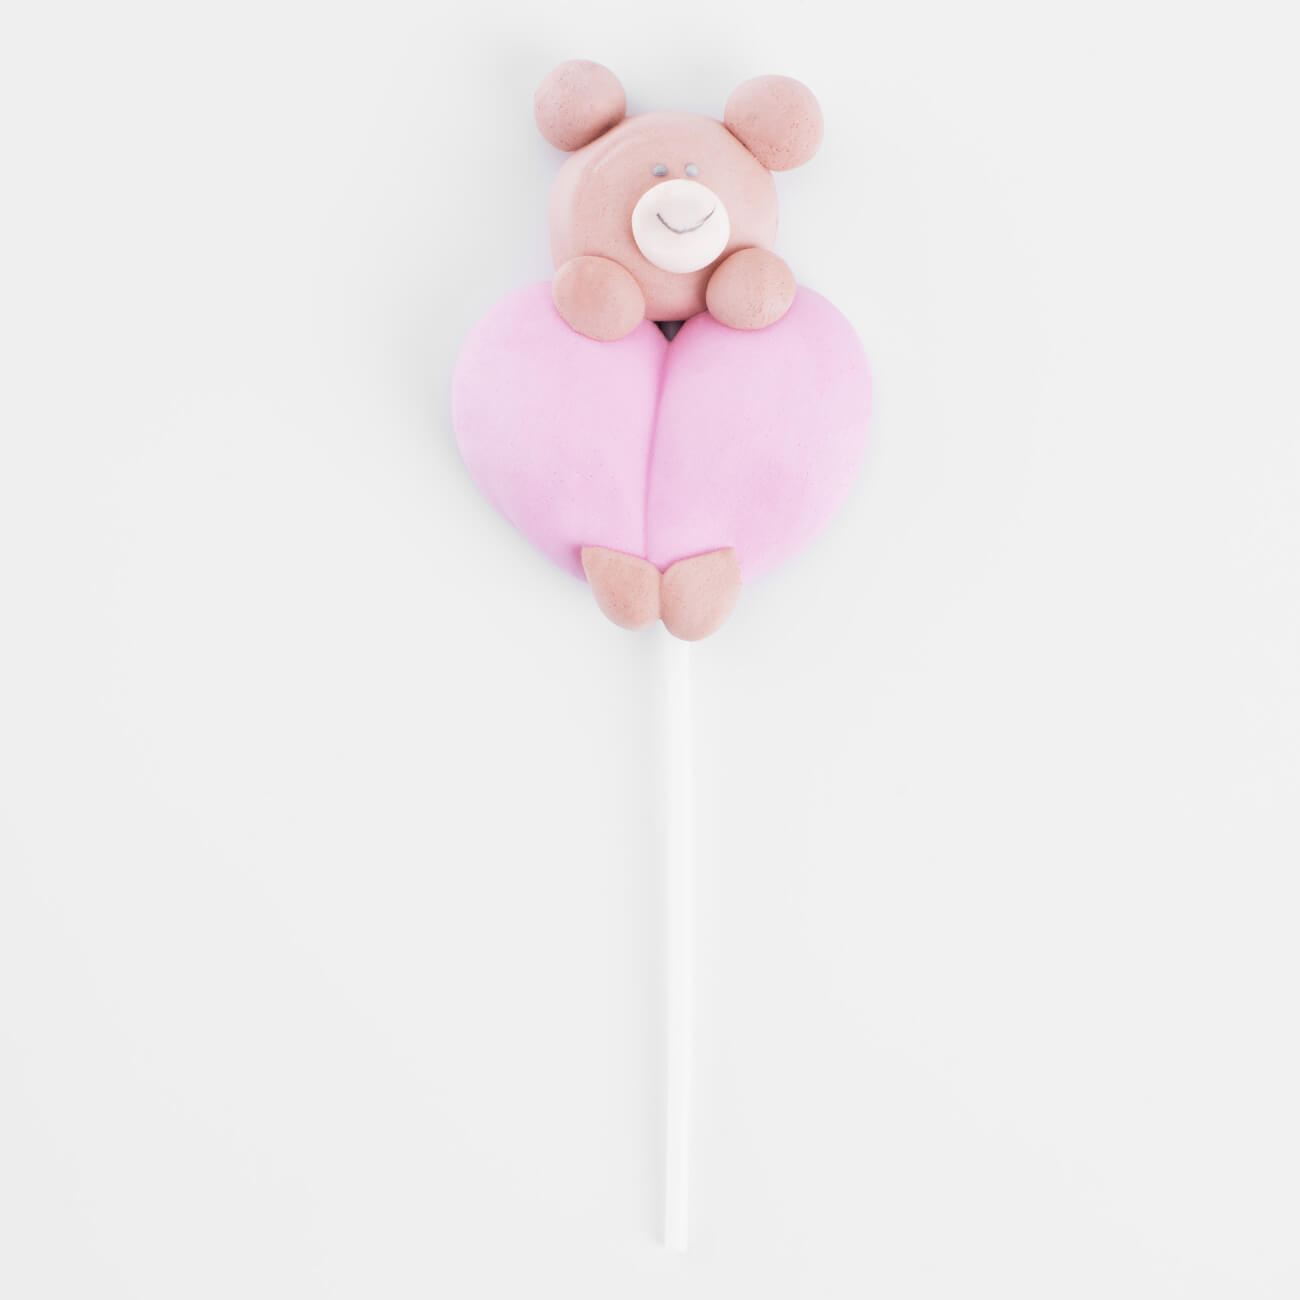 Маршмеллоу, 17 гр, на палочке, коричнево-розовое, Ваниль, Мишка с сердцем, Sweet life мишка choco с сердцем 15 см